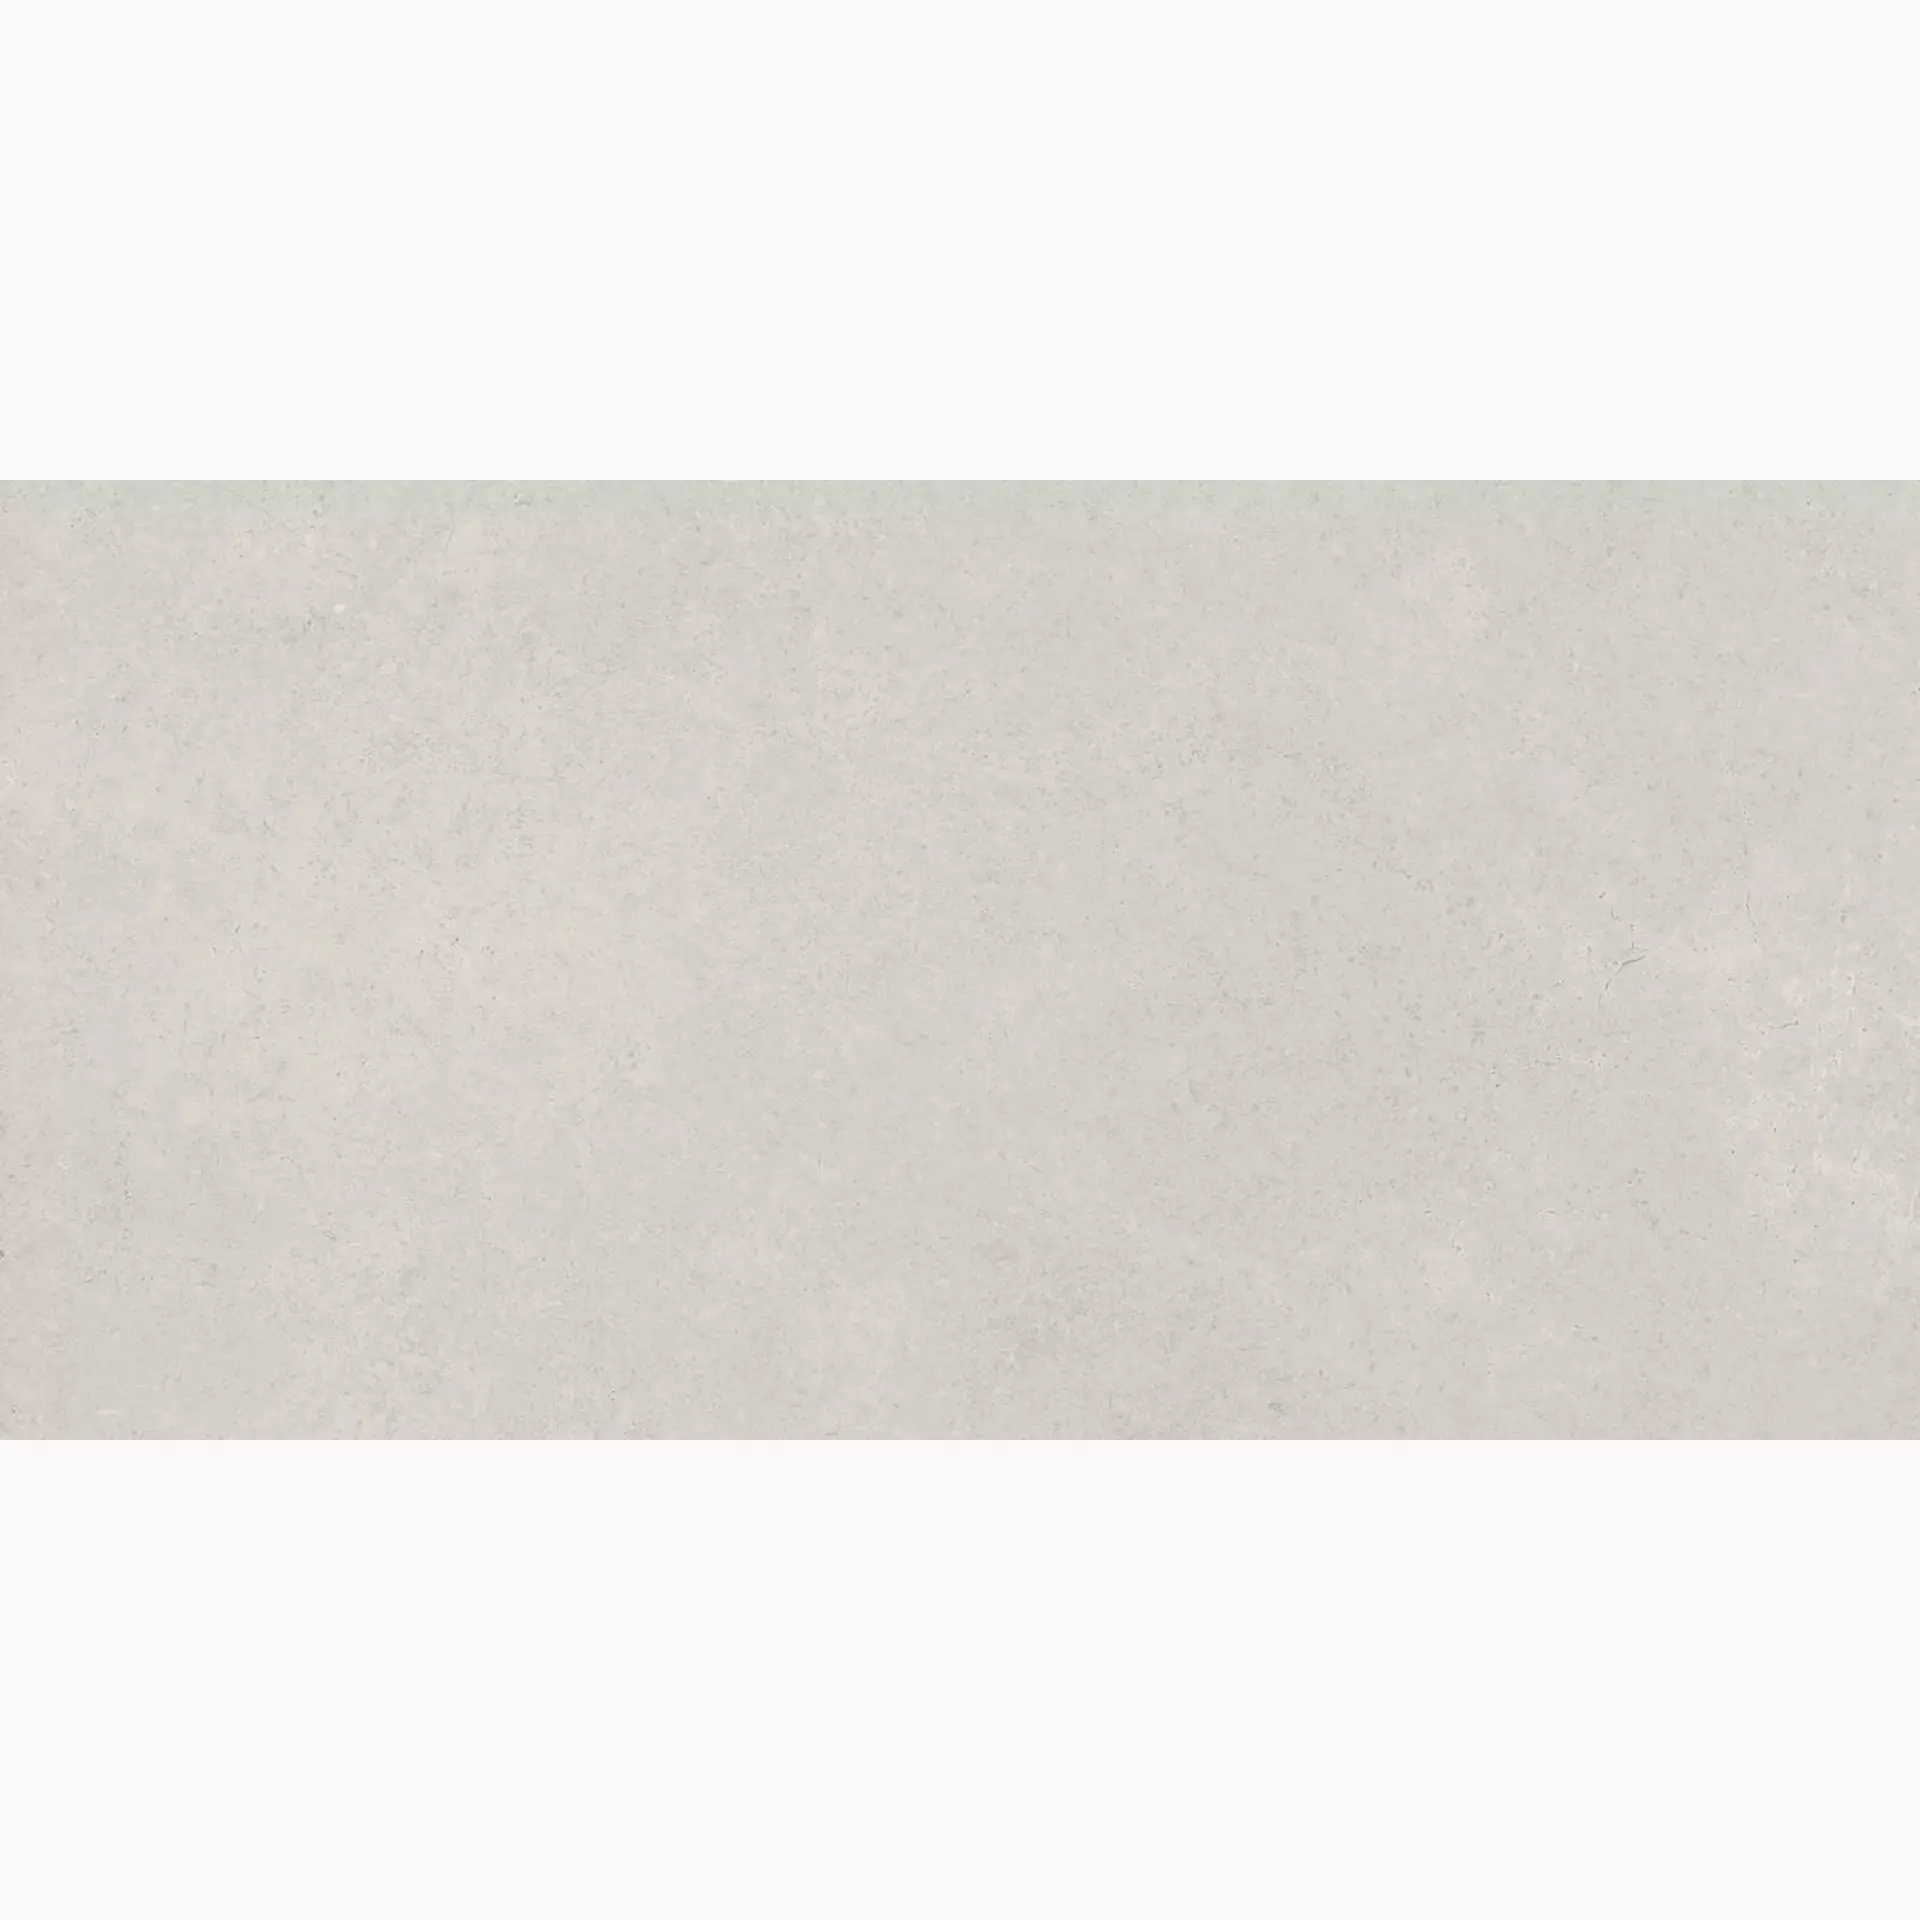 Marazzi Stream White Naturale – Matt M0UZ 30x60cm rectified 8,5mm